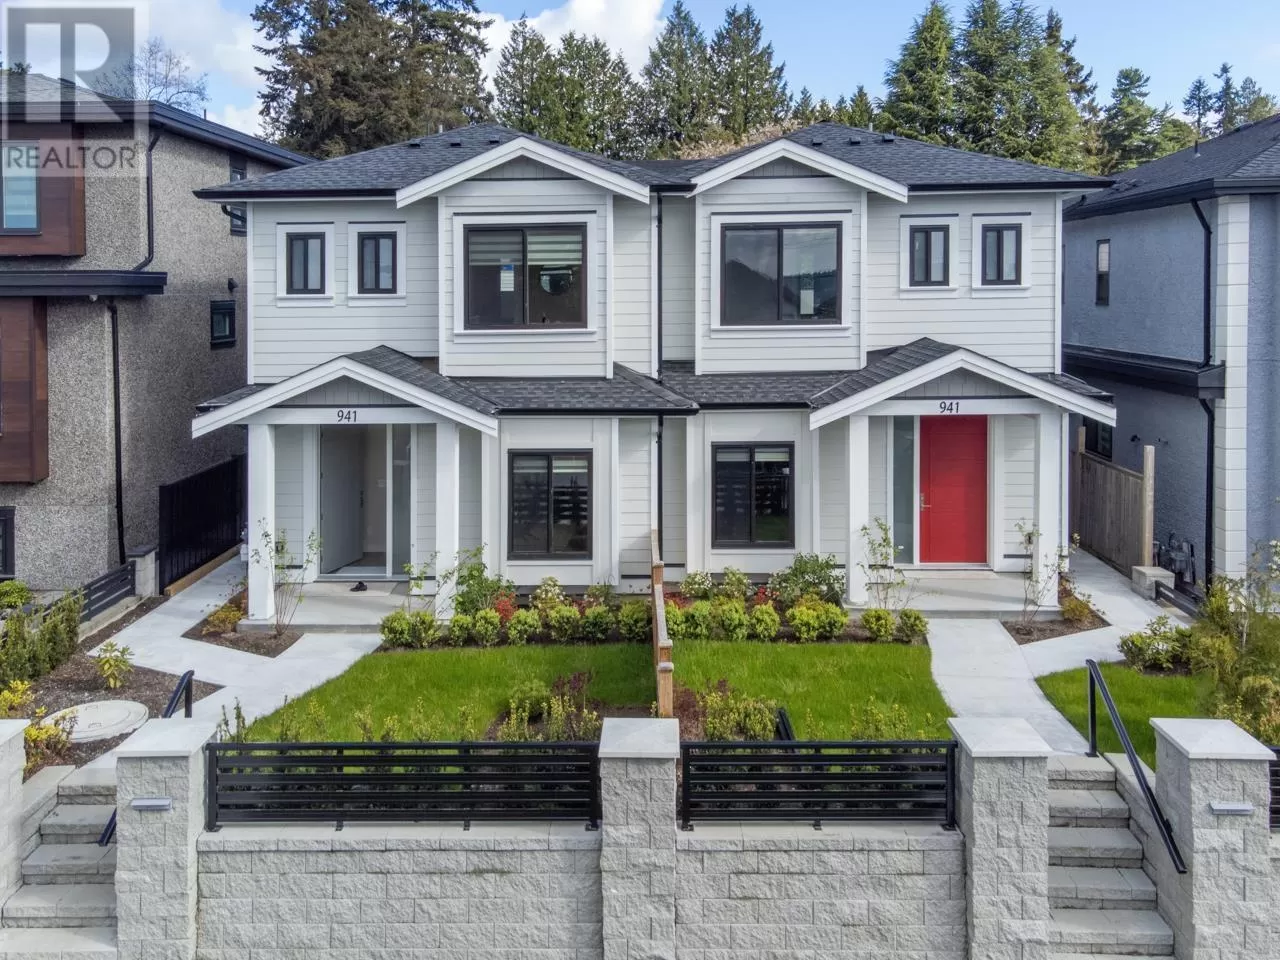 Duplex for rent: 941a Walls Avenue, Coquitlam, British Columbia V3K 2T2